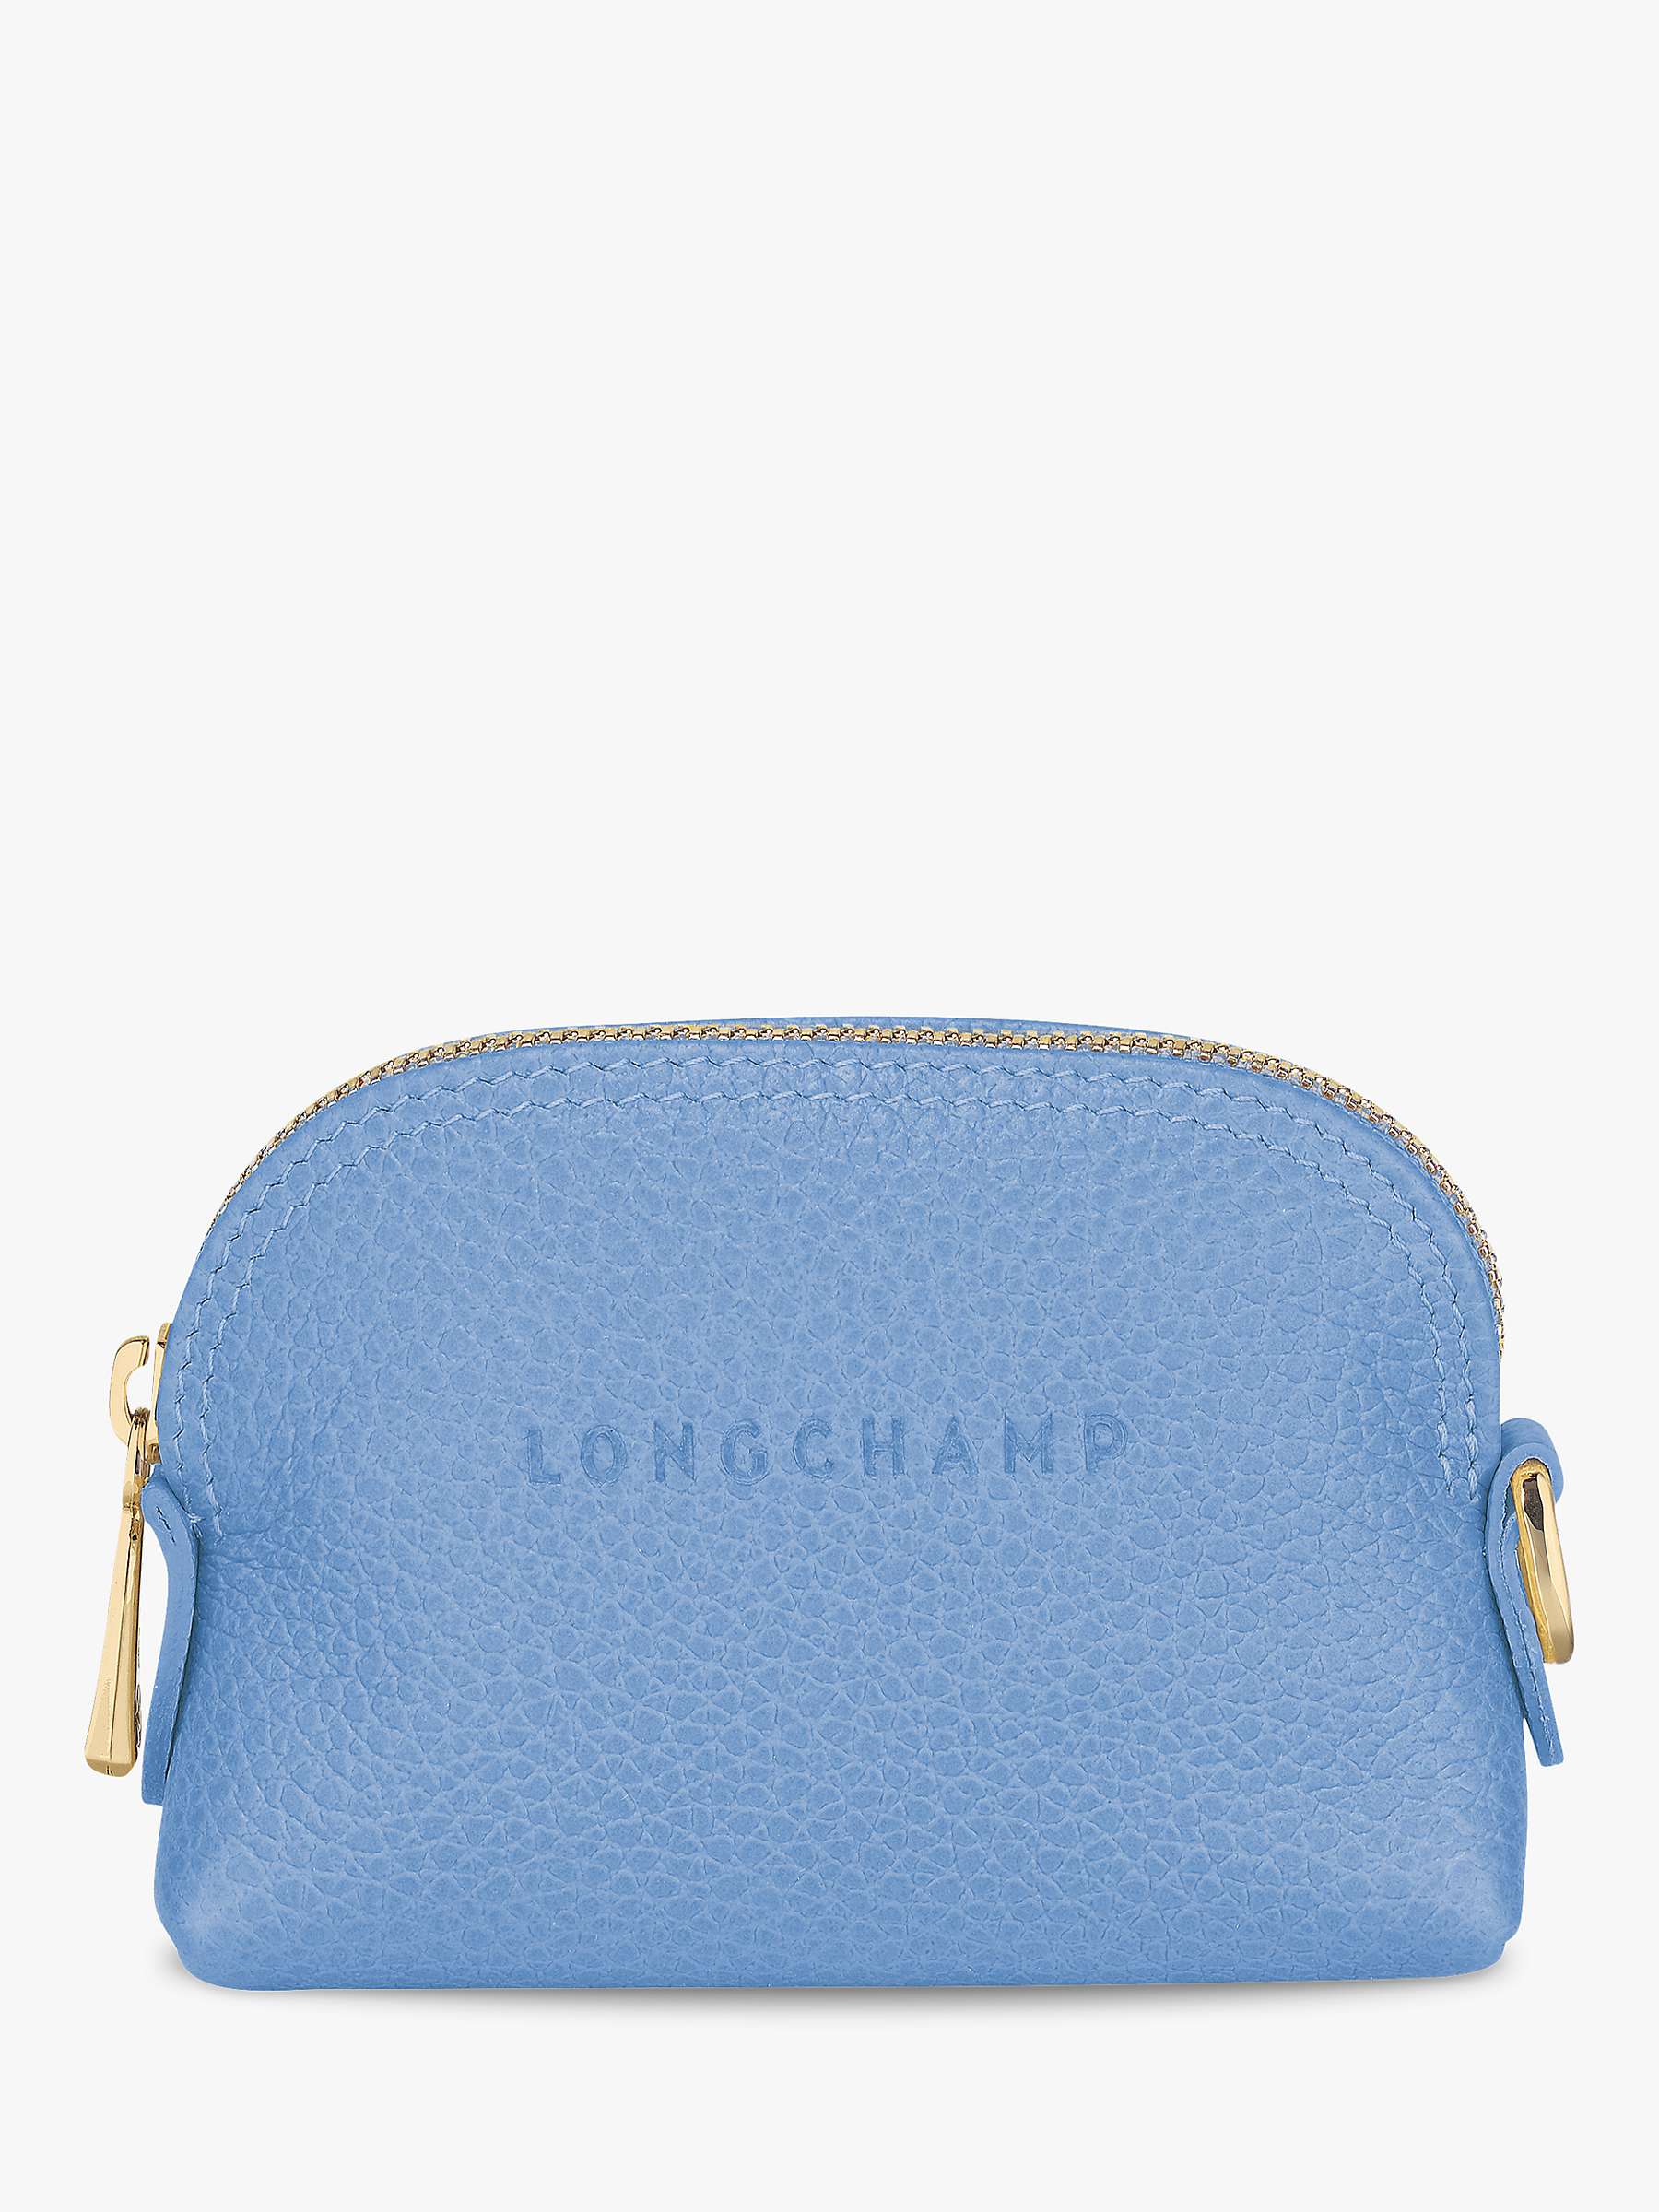 Longchamp Le Foulonné Leather Coin Purse, Cloud Blue at John Lewis ...